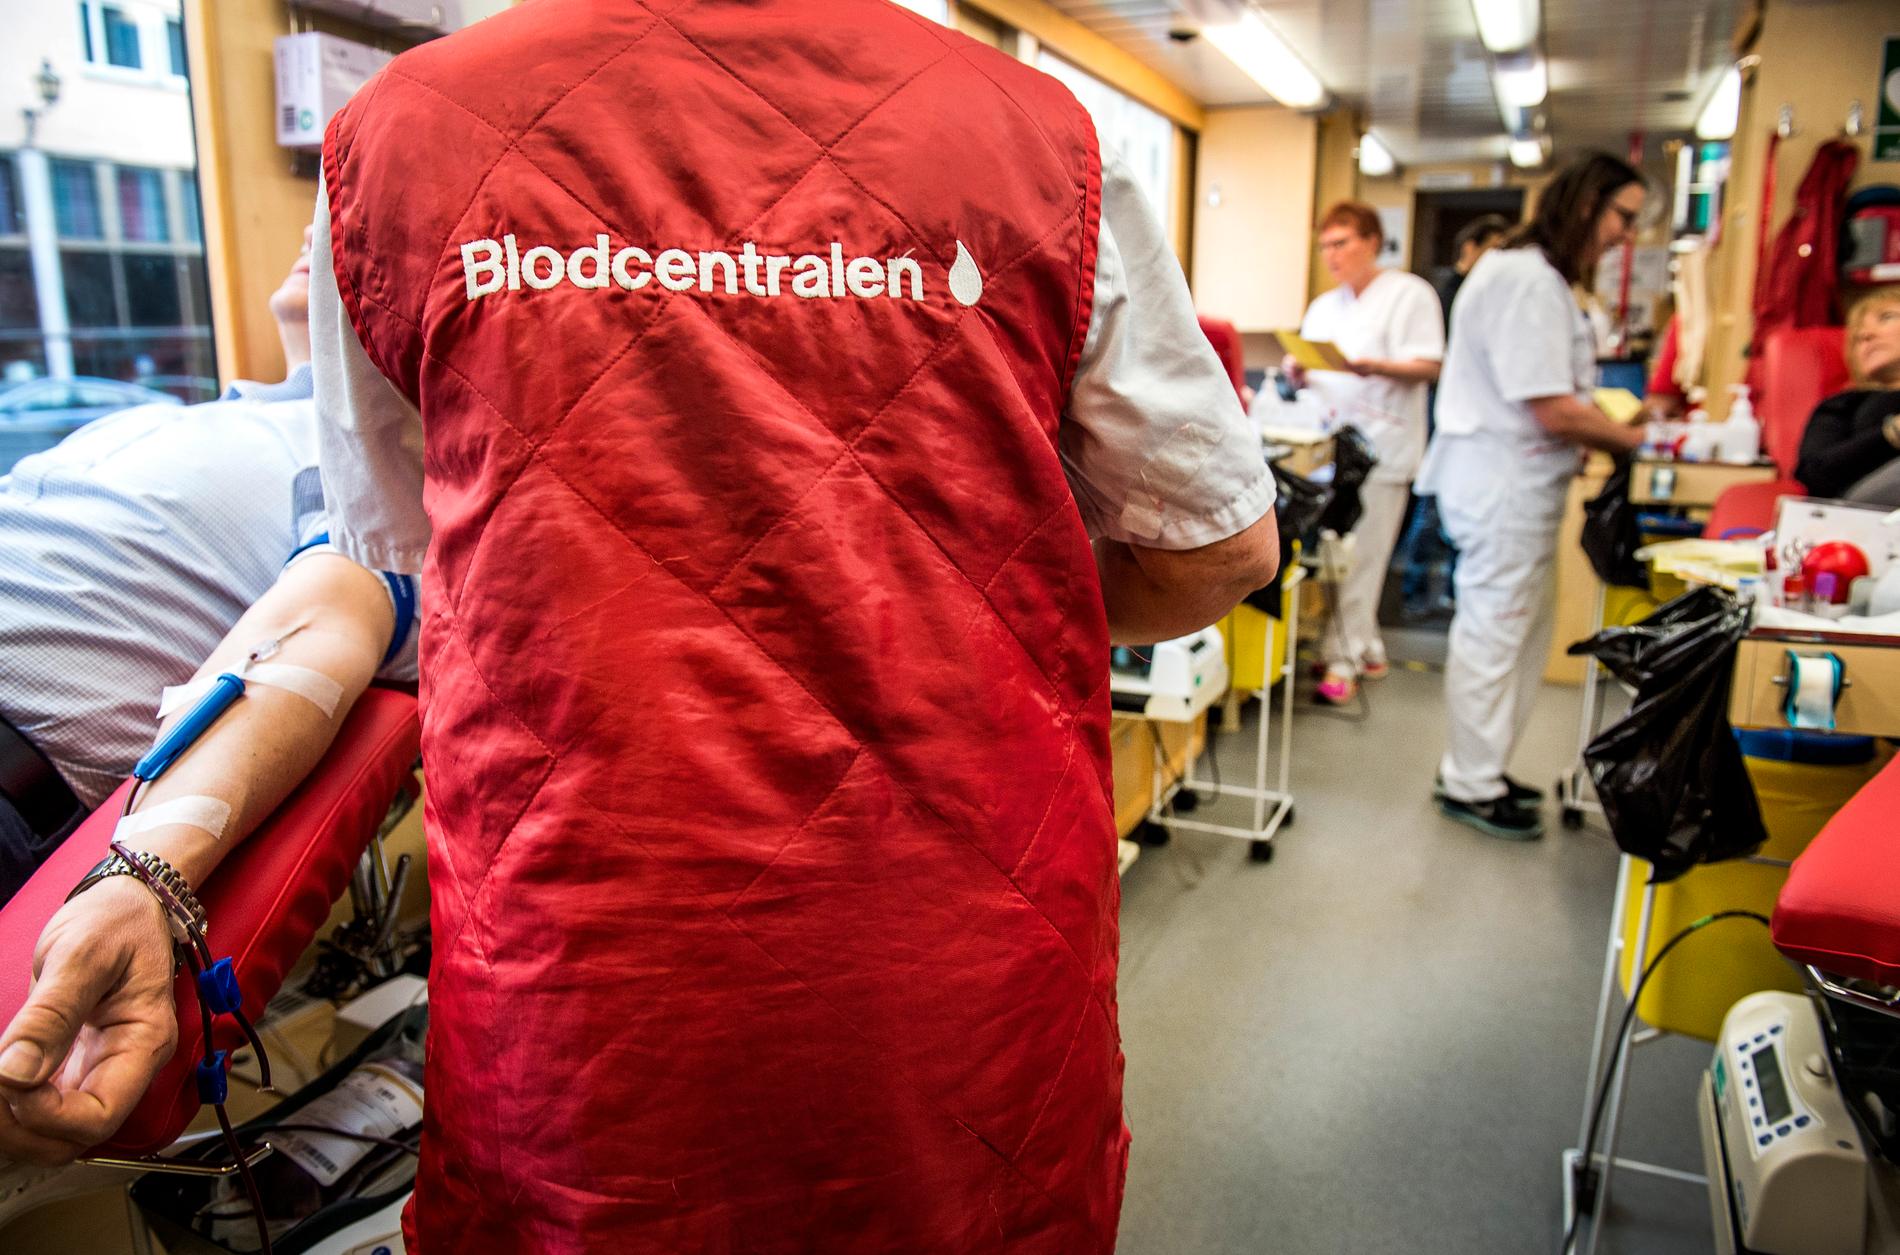 ”Jag tror att vi kommer få kämpa på under hela pandemin”, säger Maggie Östlund, biomedicinsk analytiker vid Blodcentralen.